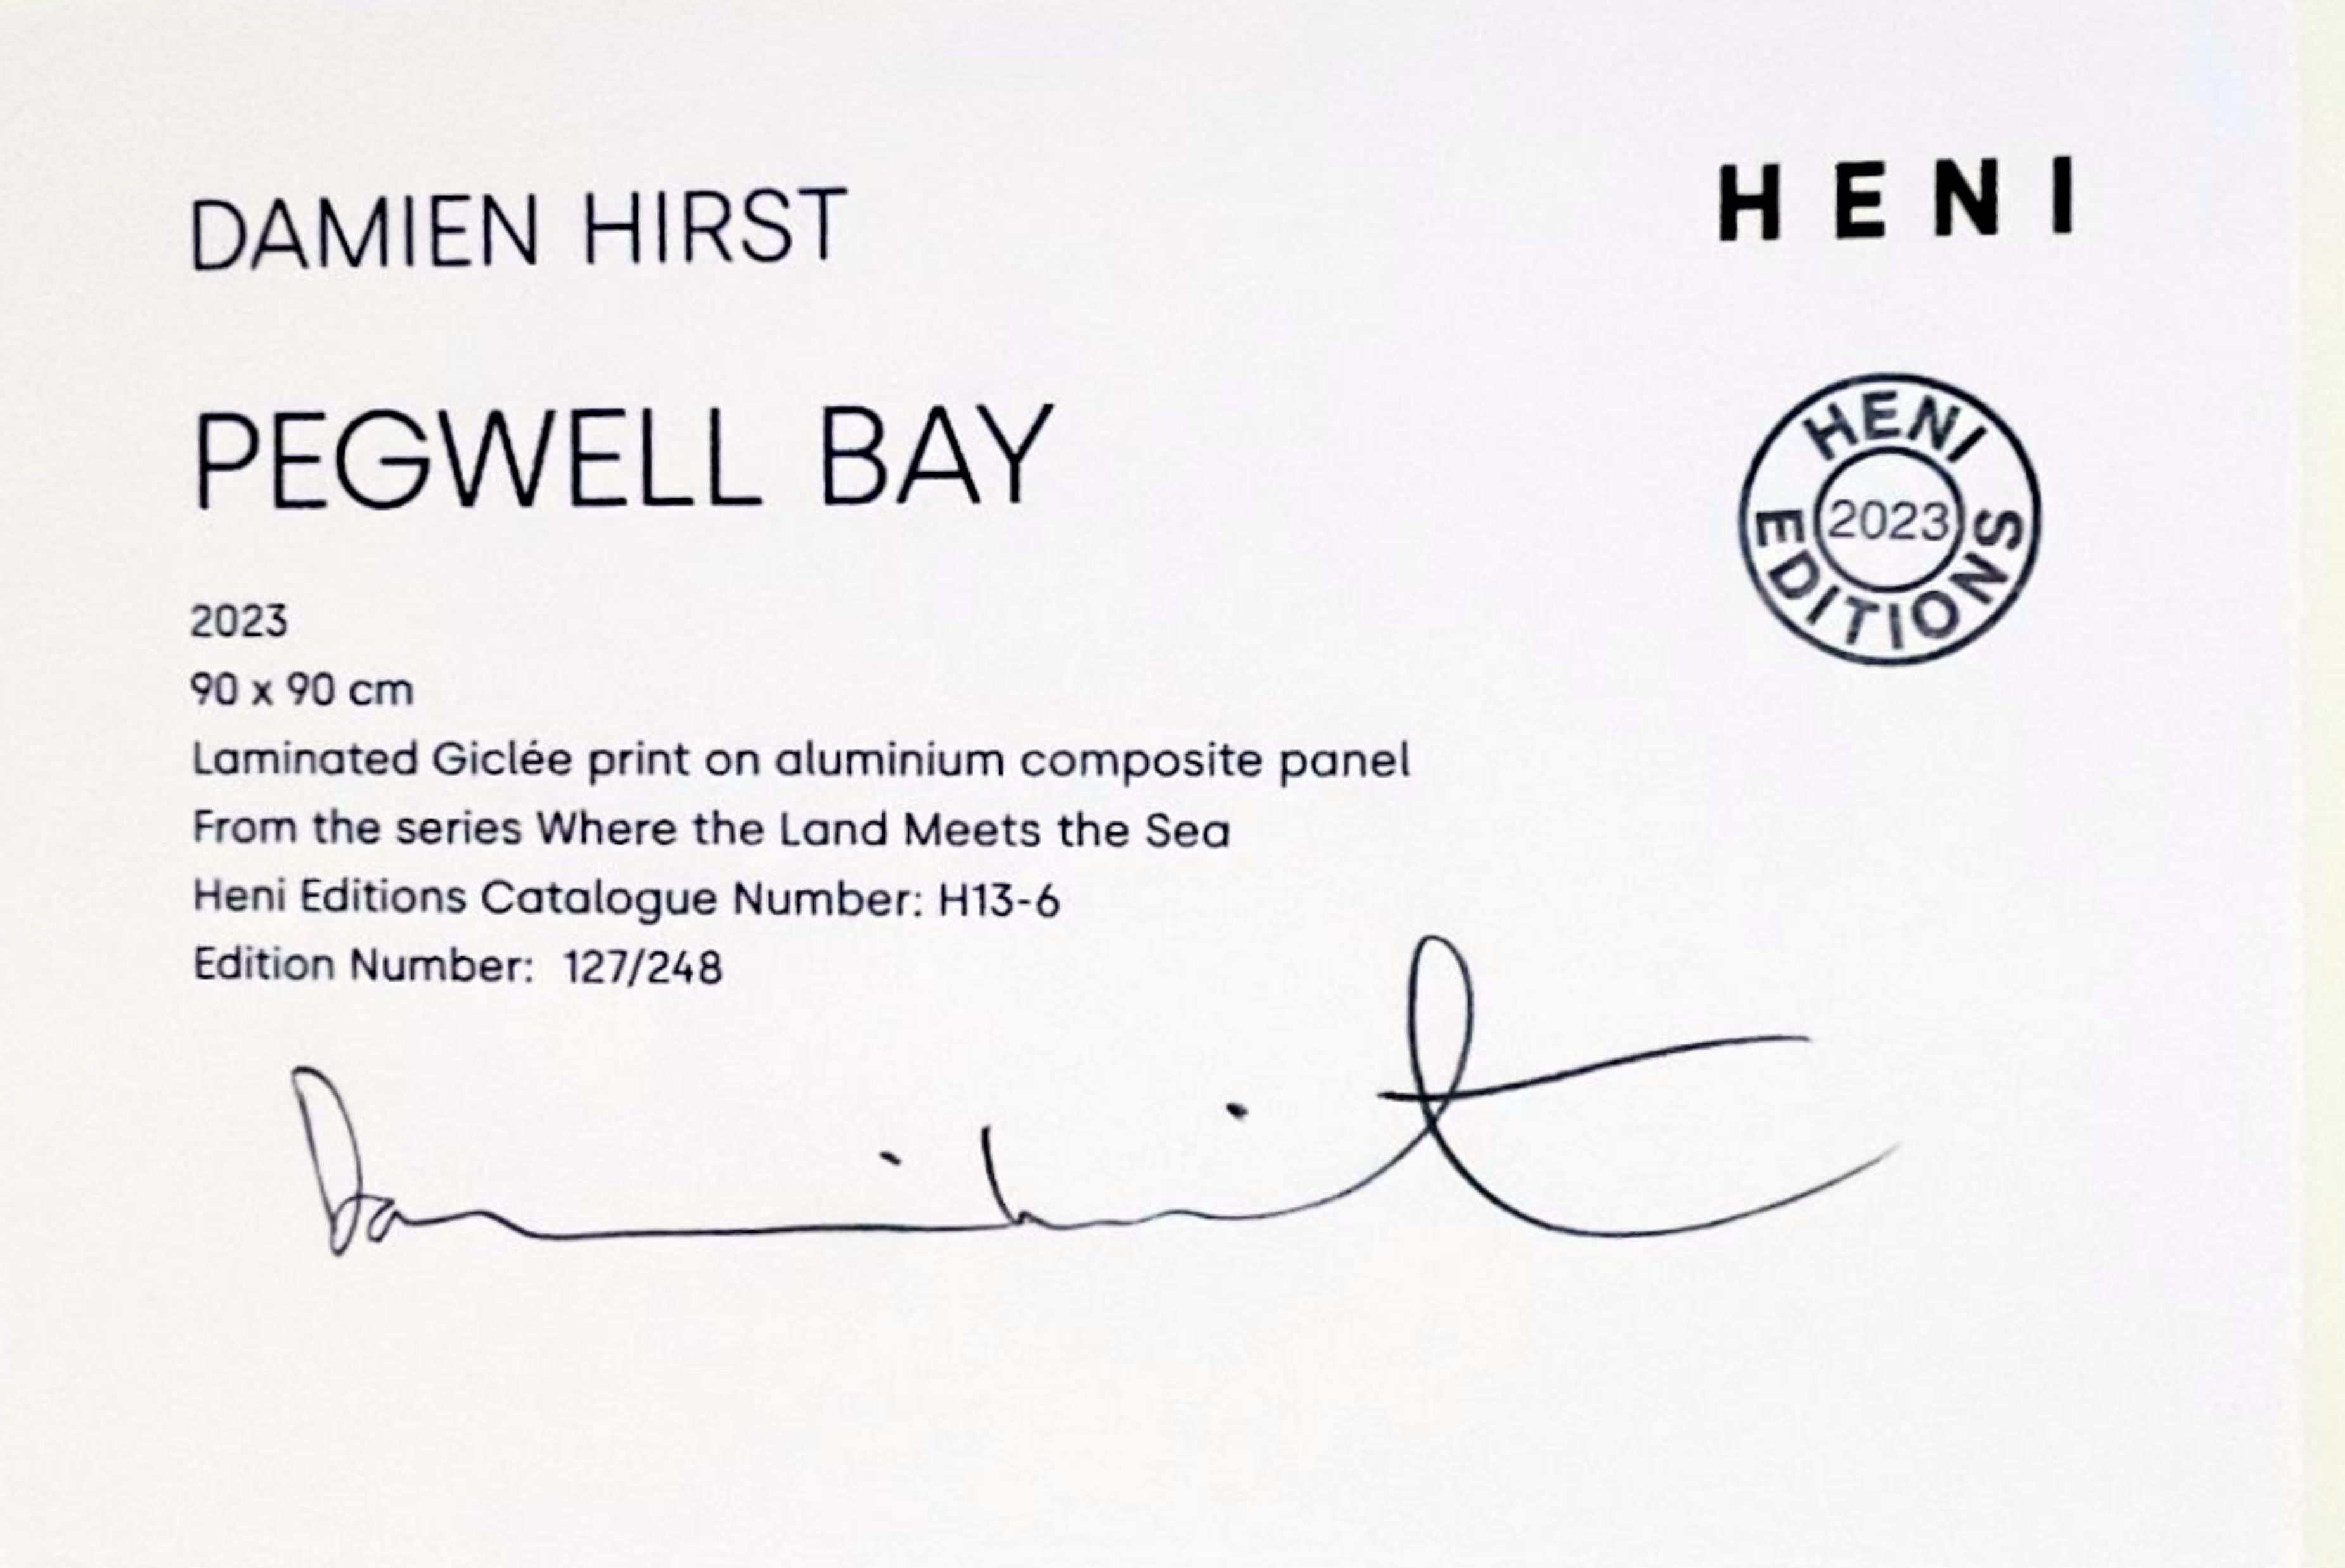 Damien Hirst
Pegwell Bay, H13-6, aus Wo das Land das Meer trifft, 2023
Laminierter Giclée-Druck auf Aluminiumverbundplatte
35 2/5 × 35 2/5 in  89.9 × 89.9 cm
Handsigniert auf dem Label und nummeriert 127/248. Dieses Kunstwerk kann beliebig